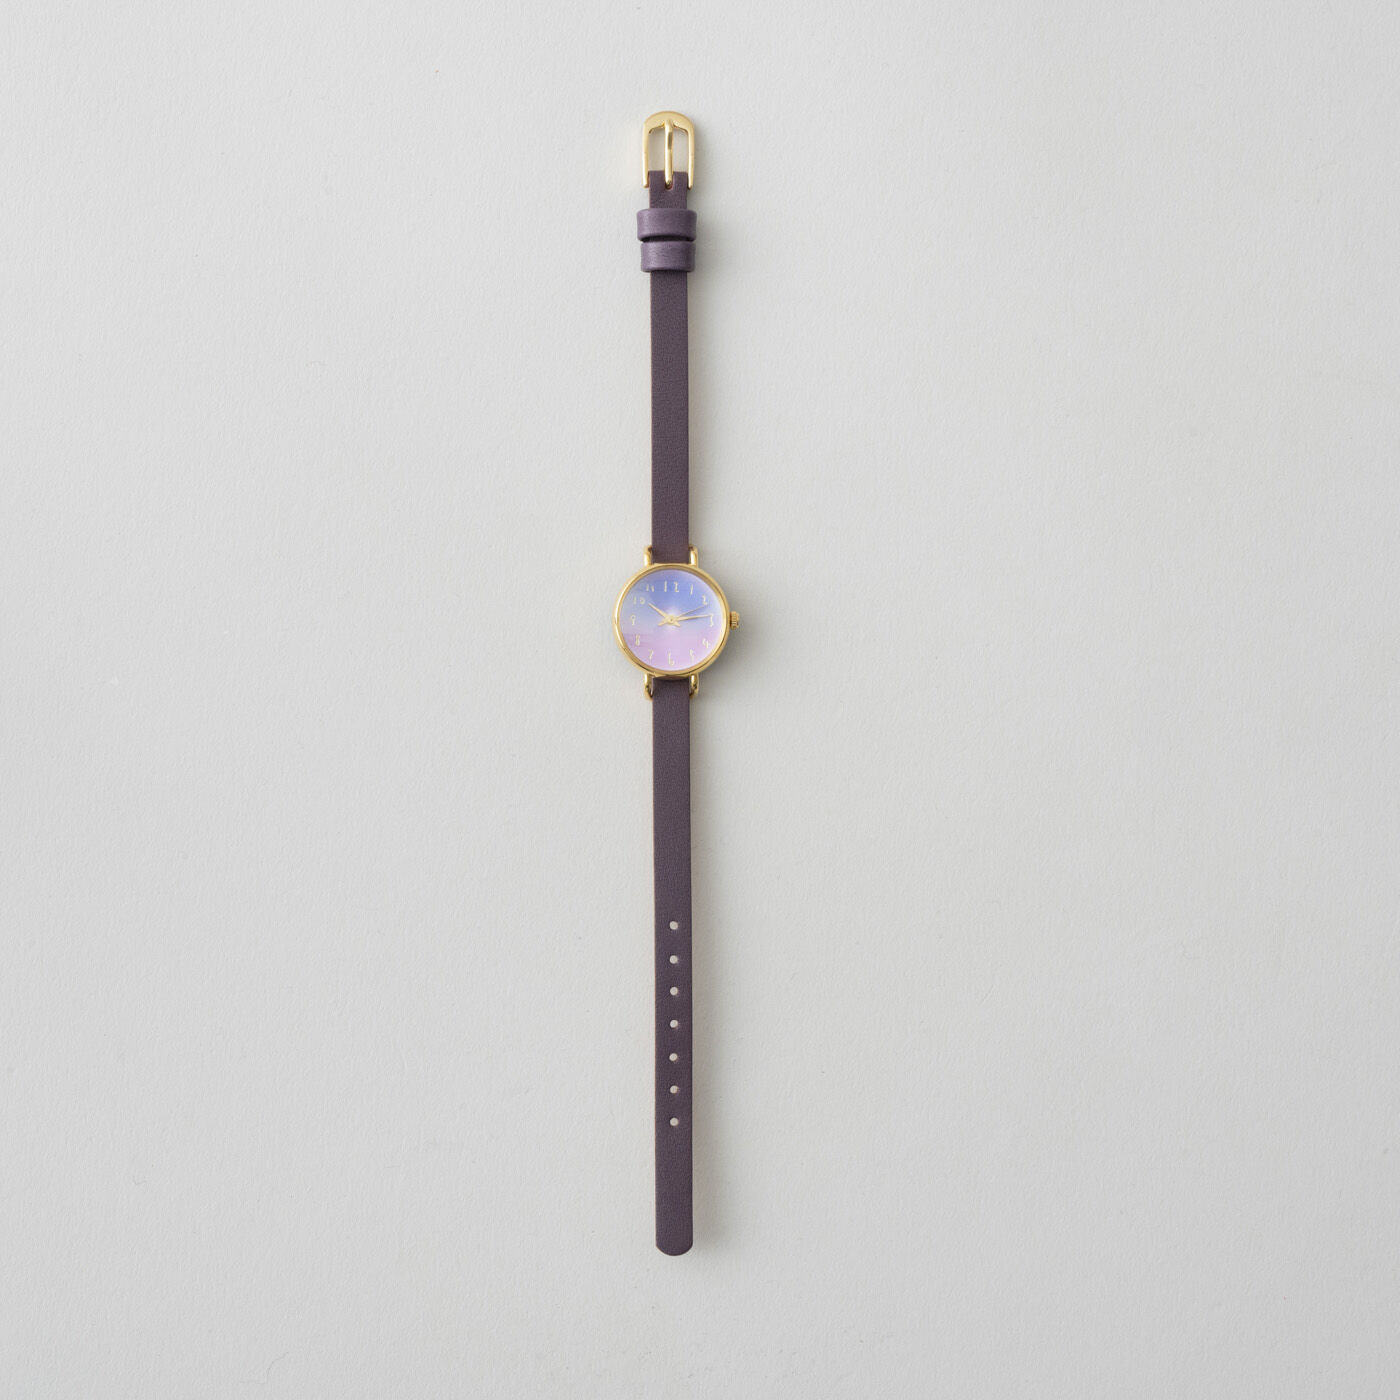 ＆Stories|金沢の時計職人が手掛けた　朝焼けに見惚れる腕時計〈マルベリーパープル〉|ひと文字ずつ手で刻まれる数字もどこかやさしげな表情で、深みのあるパープルのレザーベルトと合わせてしっとりと落ち着きのある大人の印象に仕上げました。